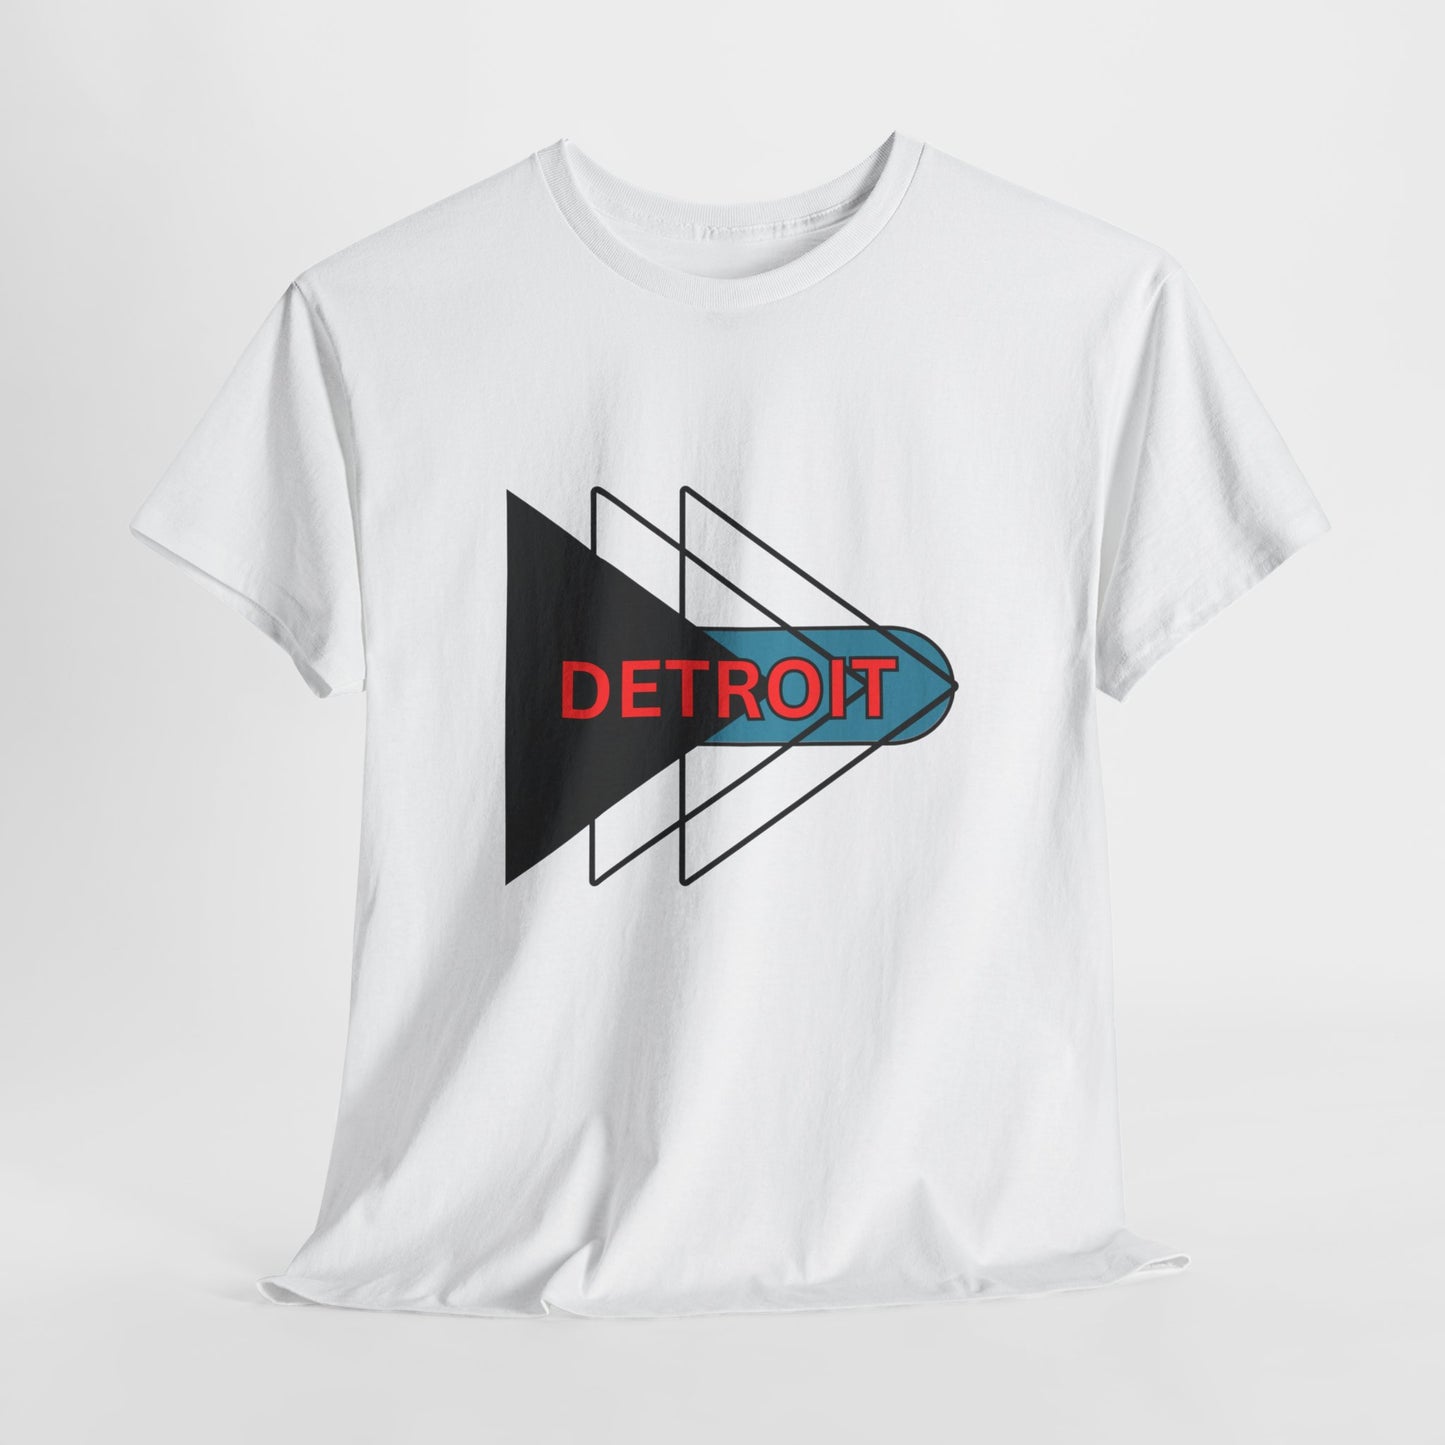 Unisex Heavy Cotton Graphic Design (Detroit) T-shirt